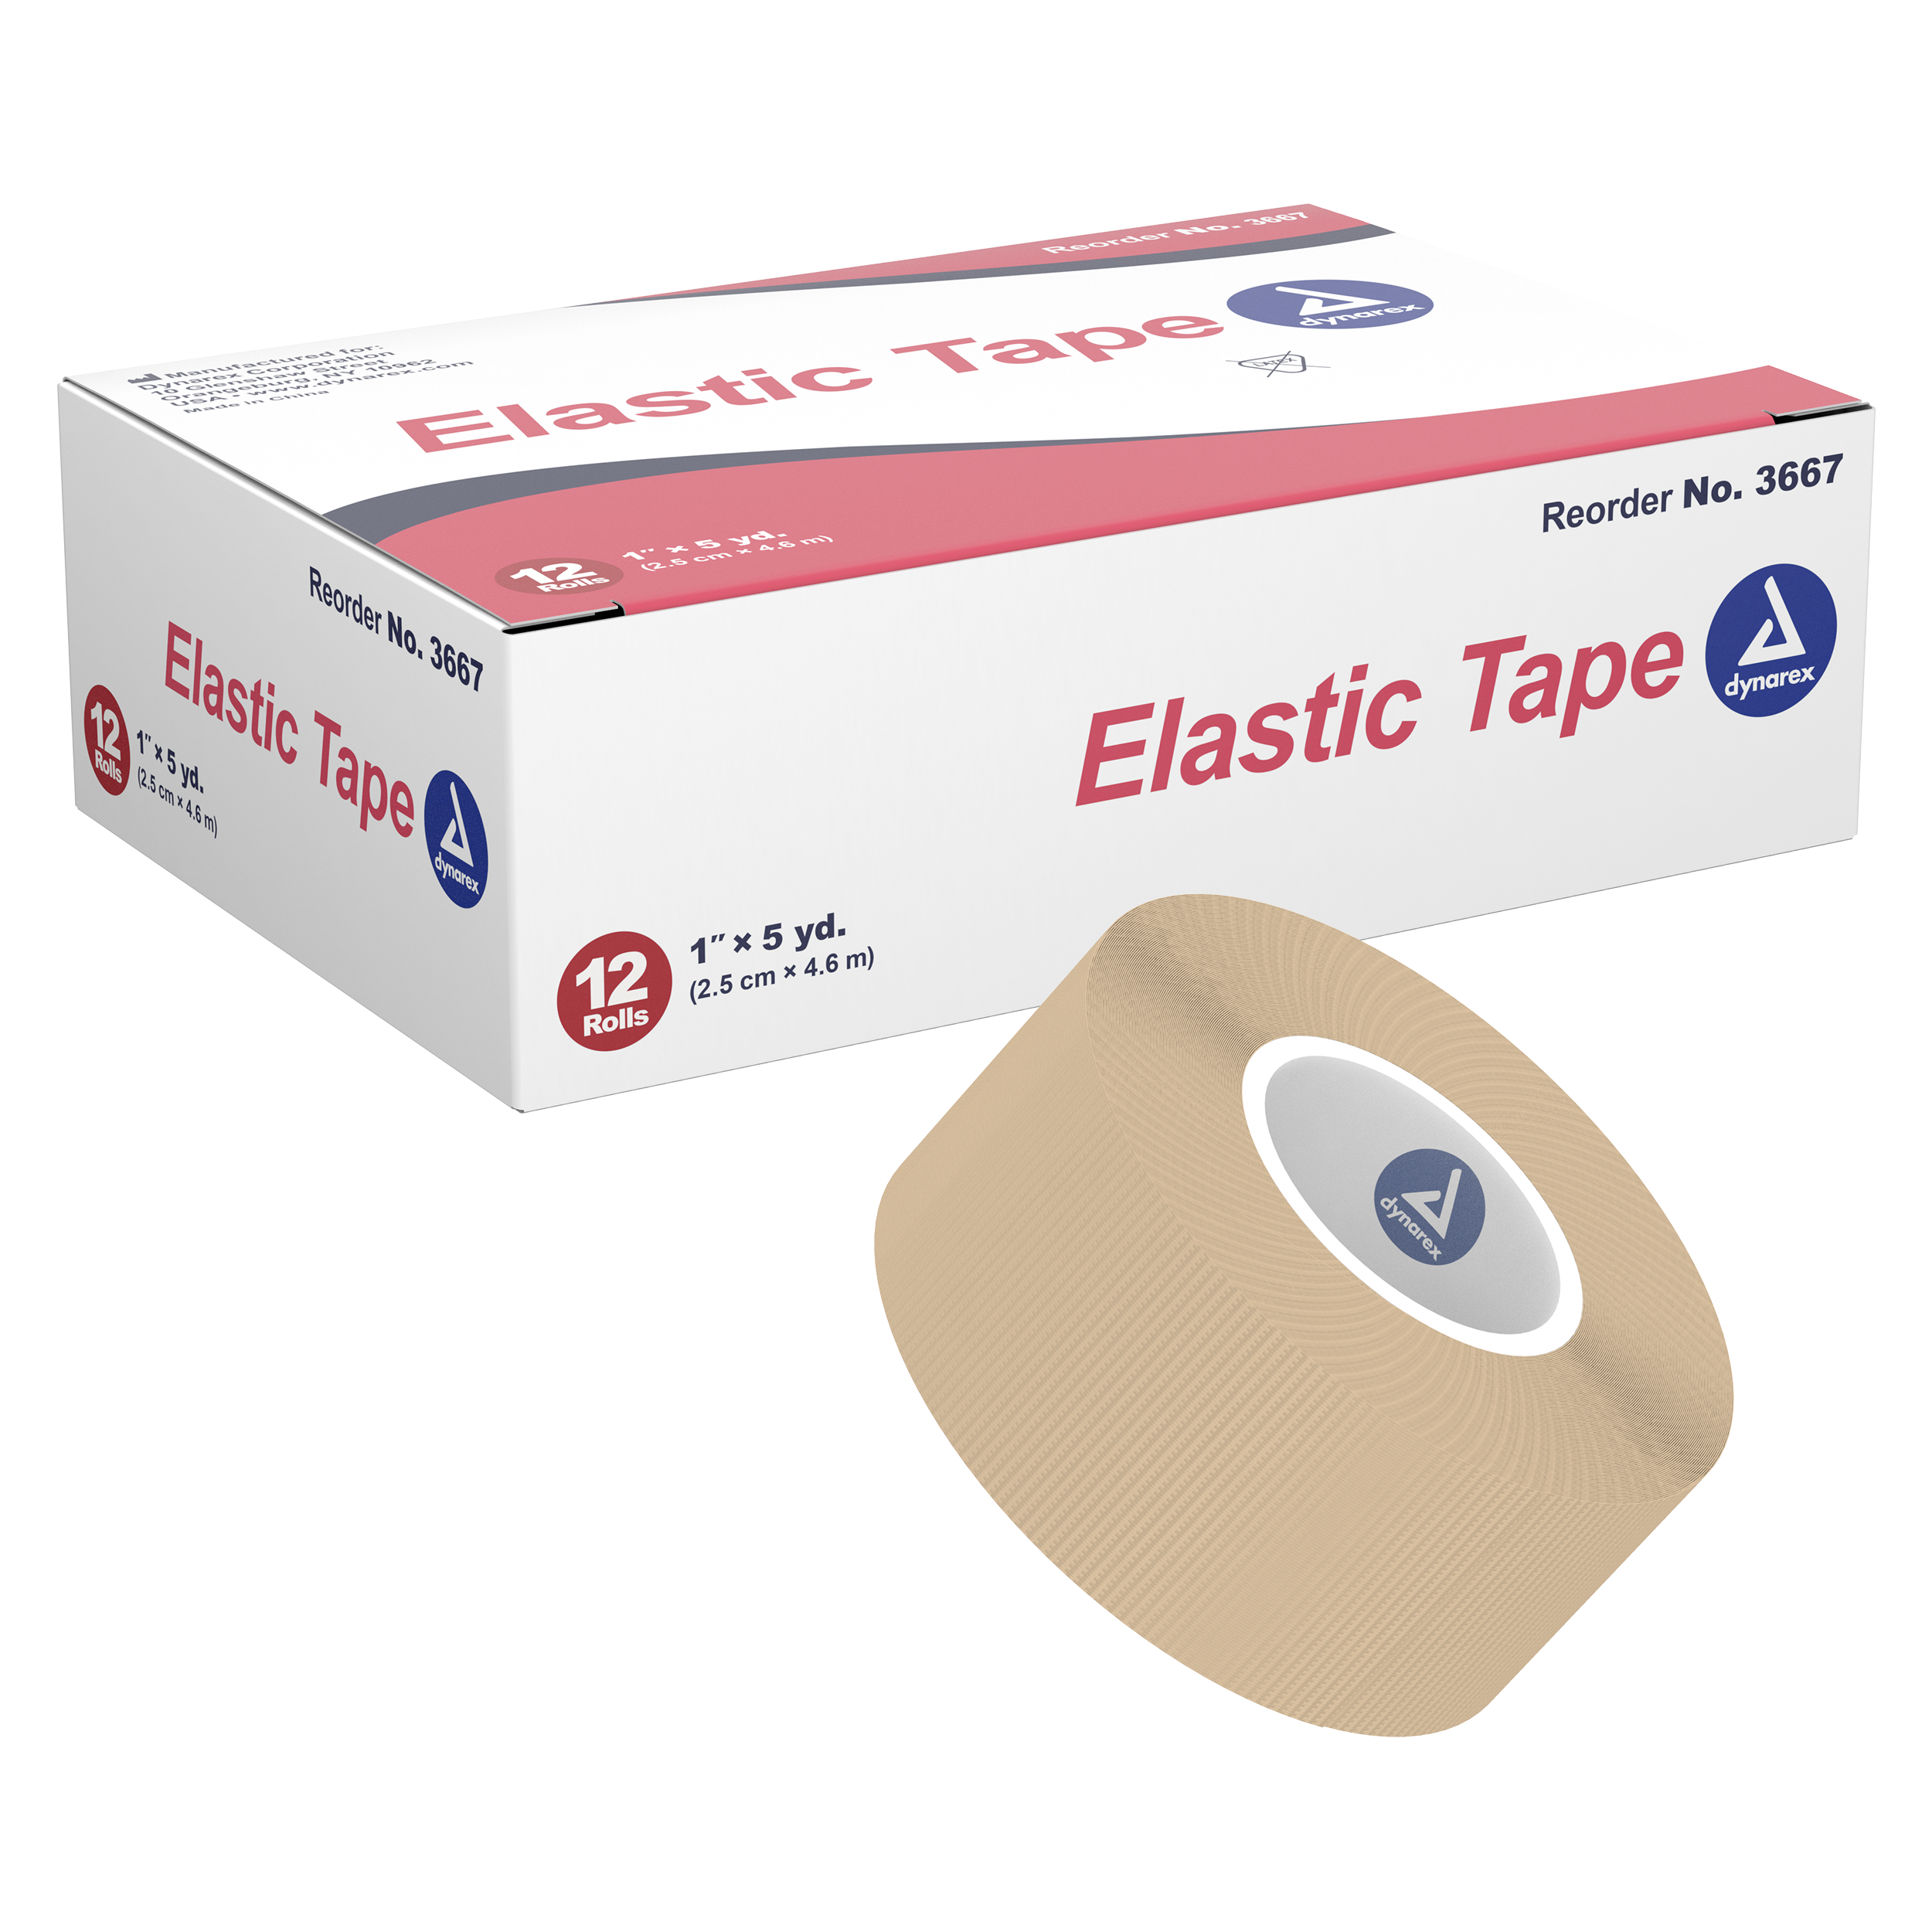 Elastic Tape, 1